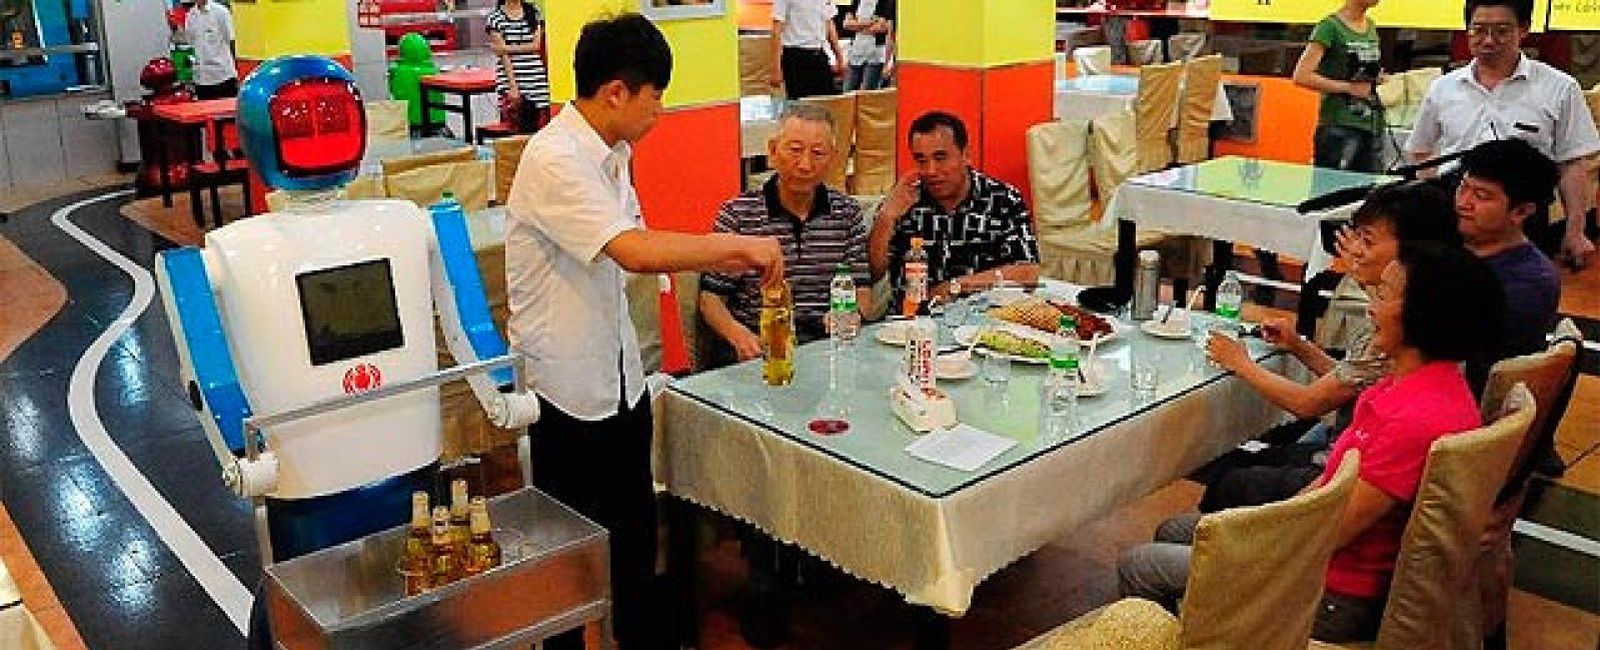 Foto: Un restaurante chino en el que le cocinarán y servirán robots